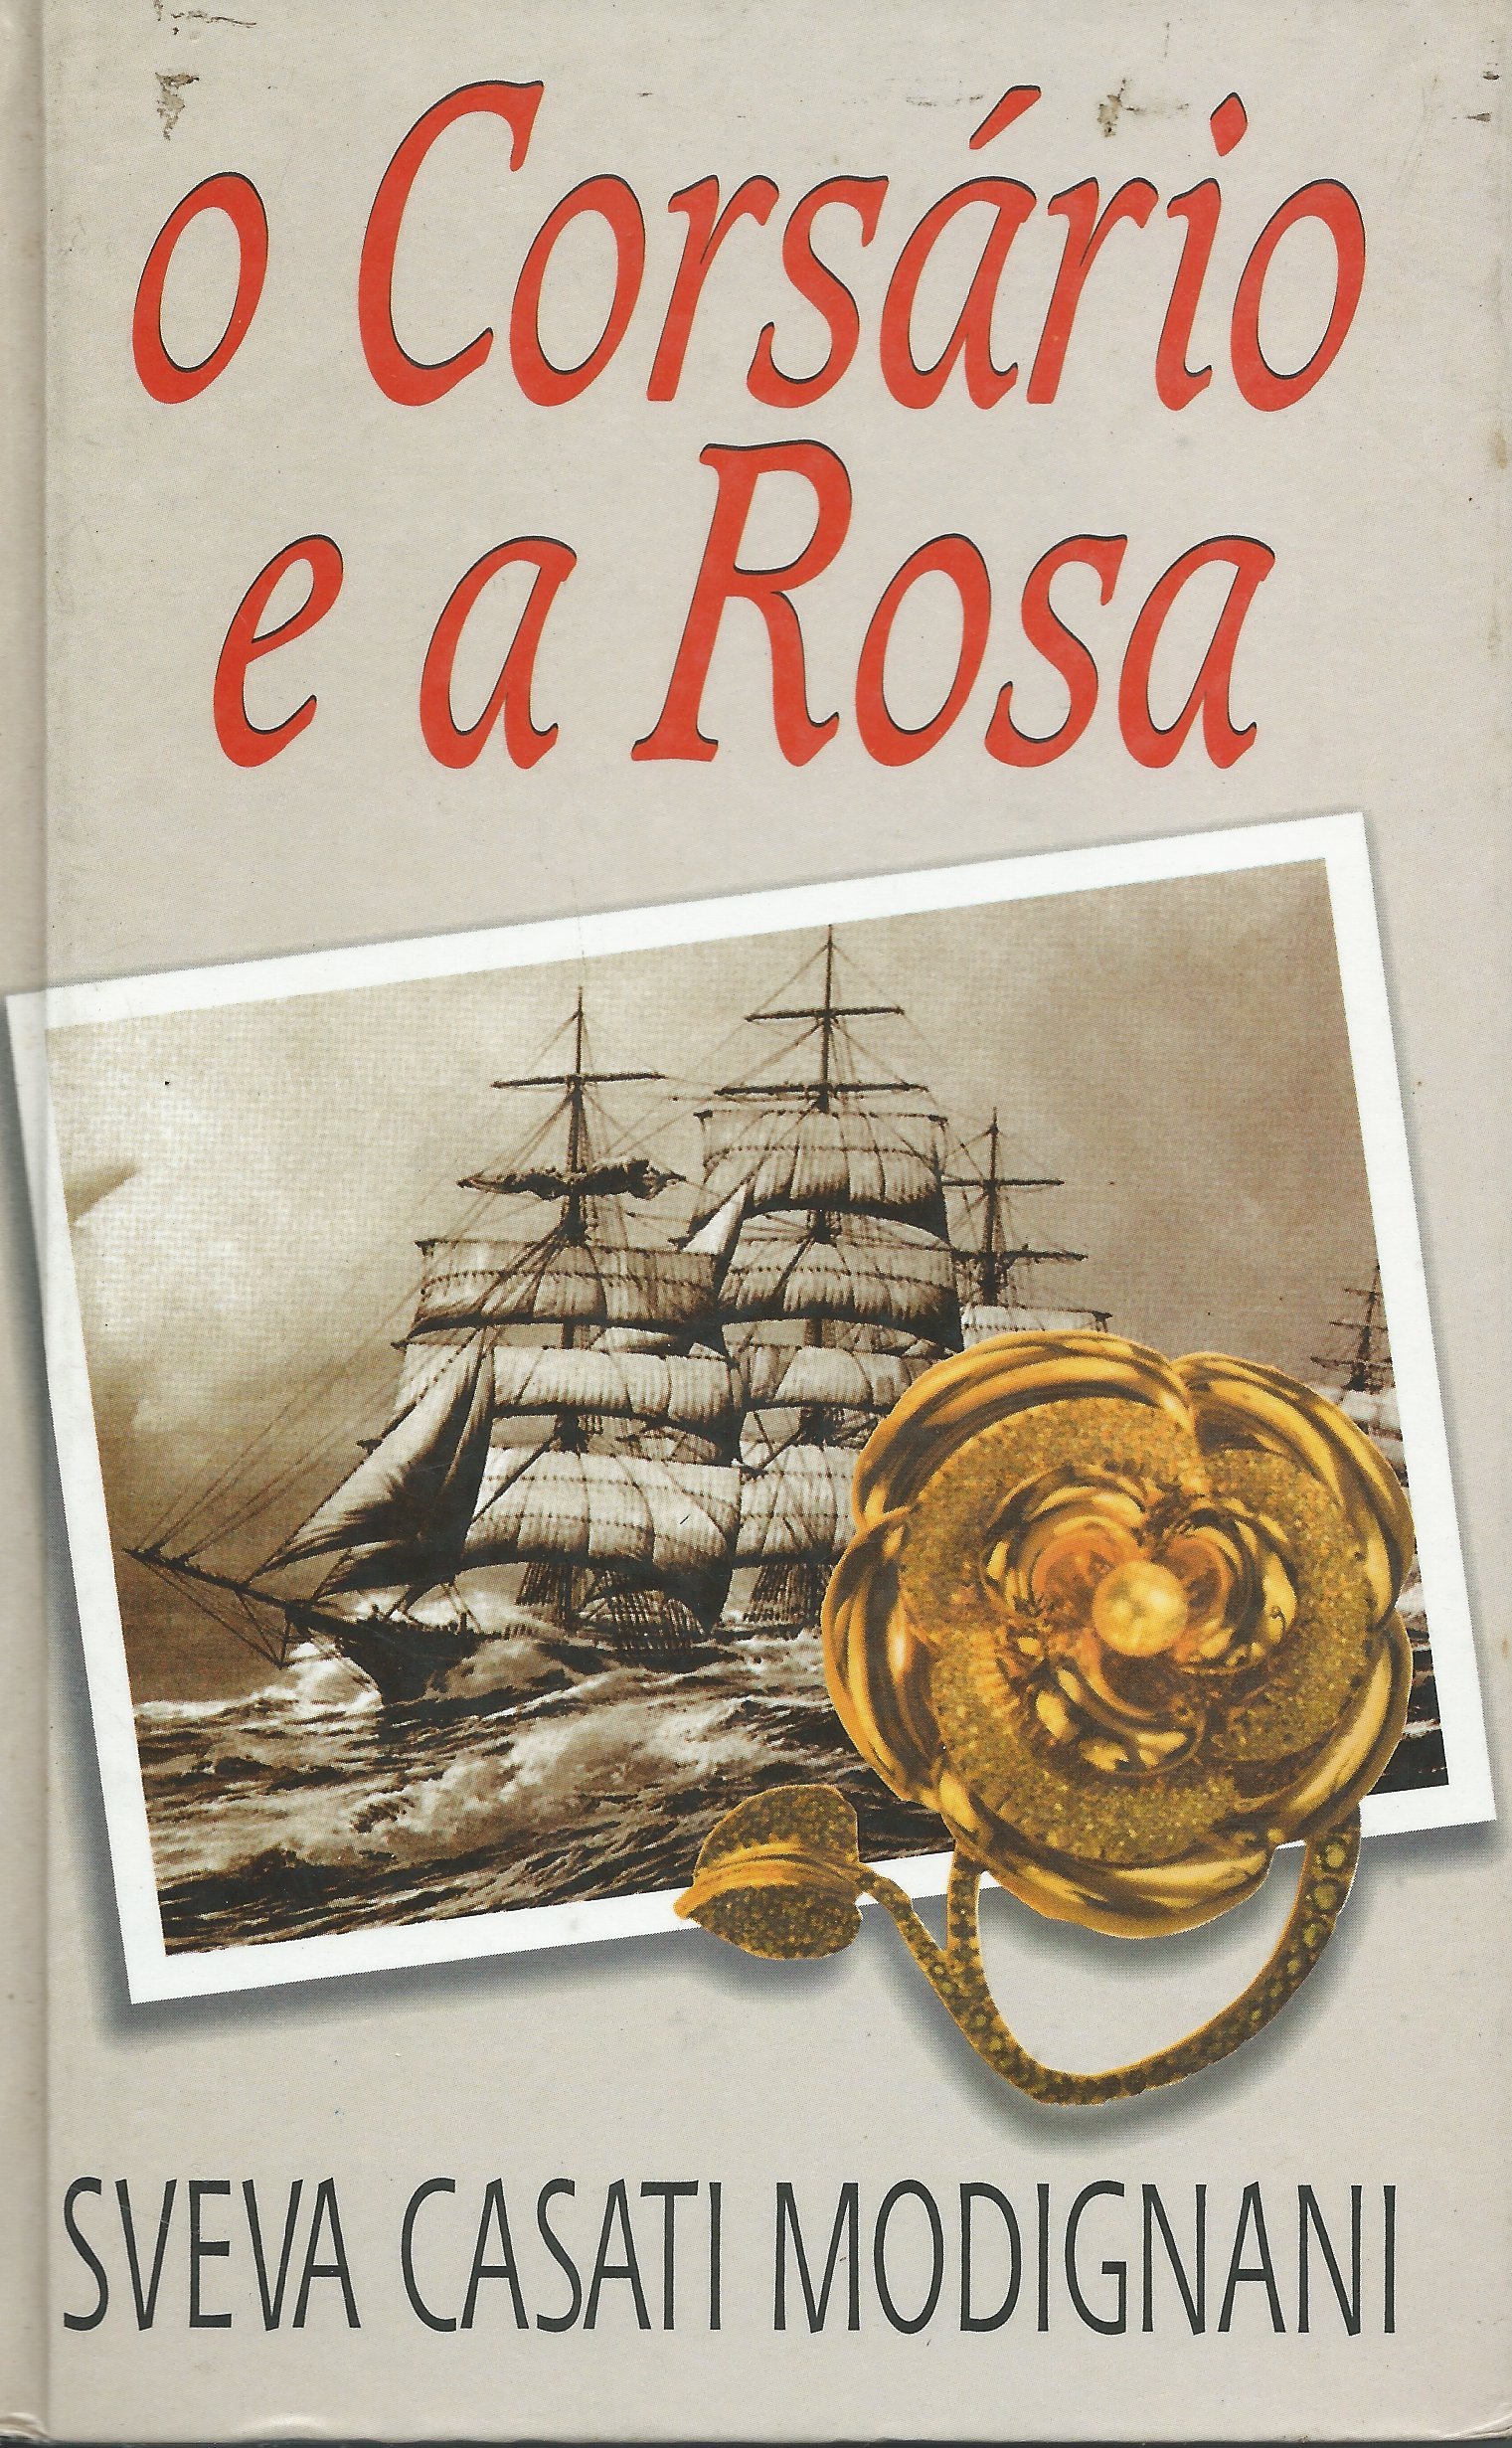 https://www.literaturabrasileira.ufsc.br/_images/obras/o_corsario_e_a_rosa.jpg